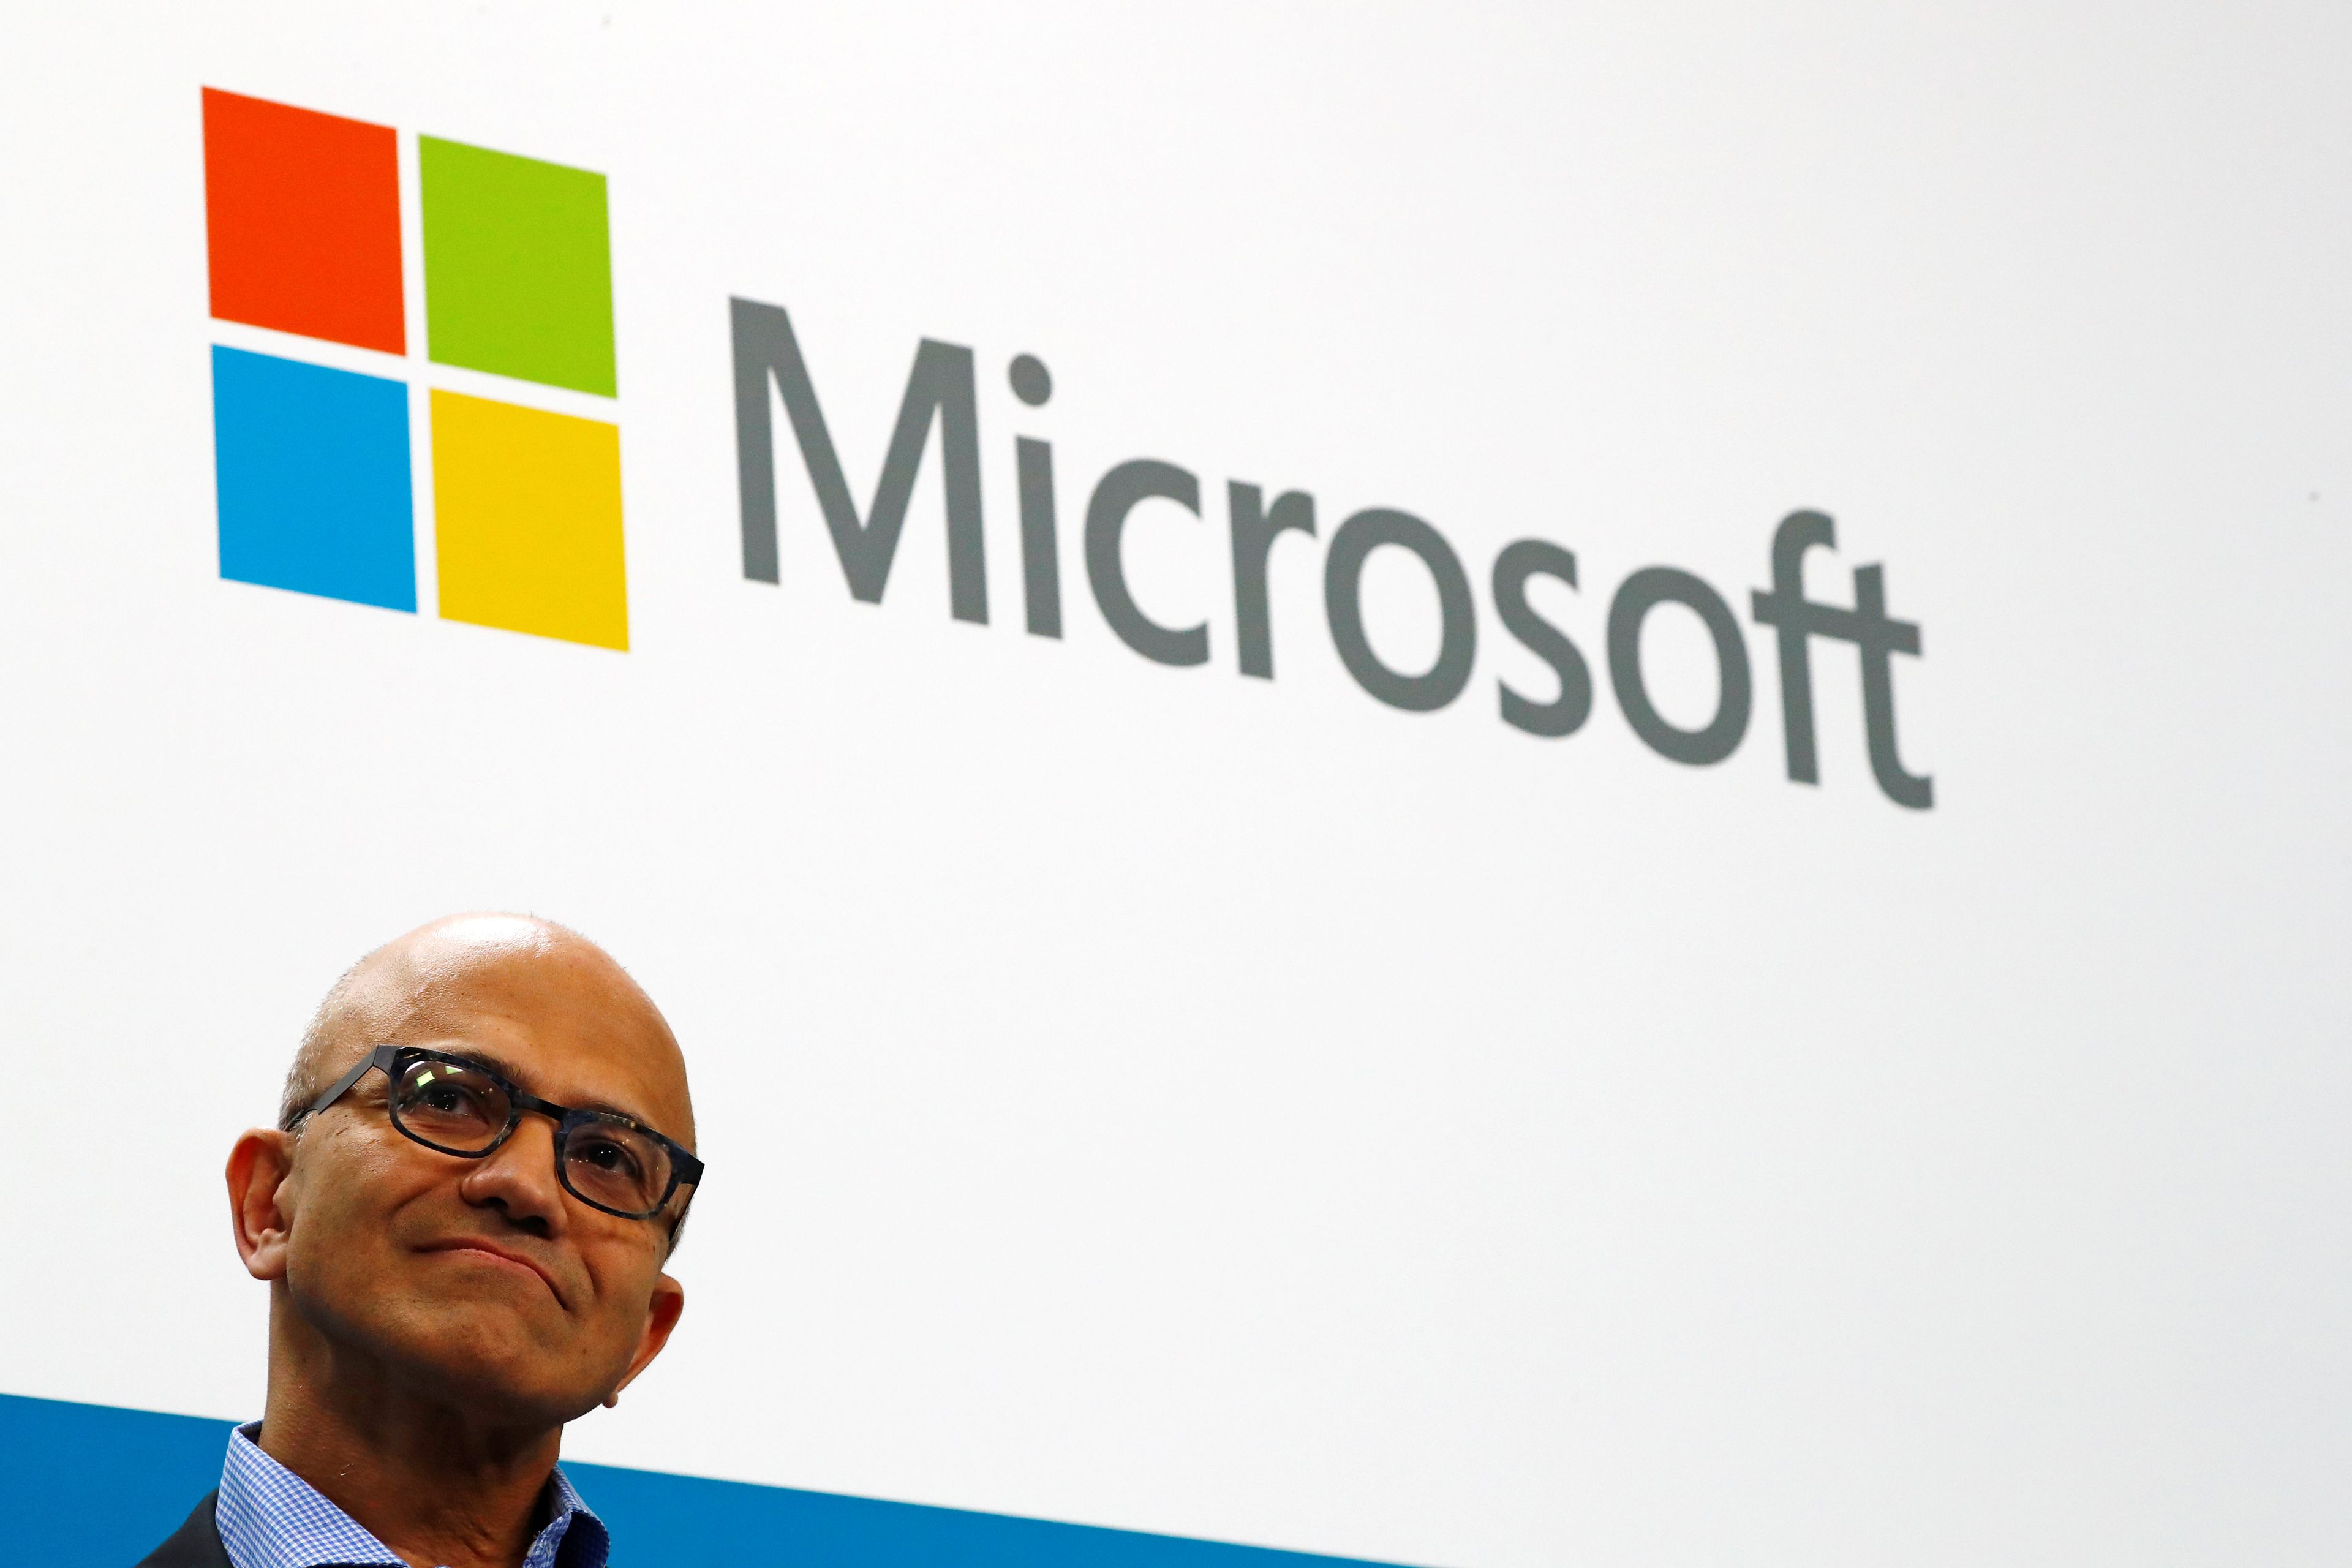 CEO Microsoft, Satya Nadella